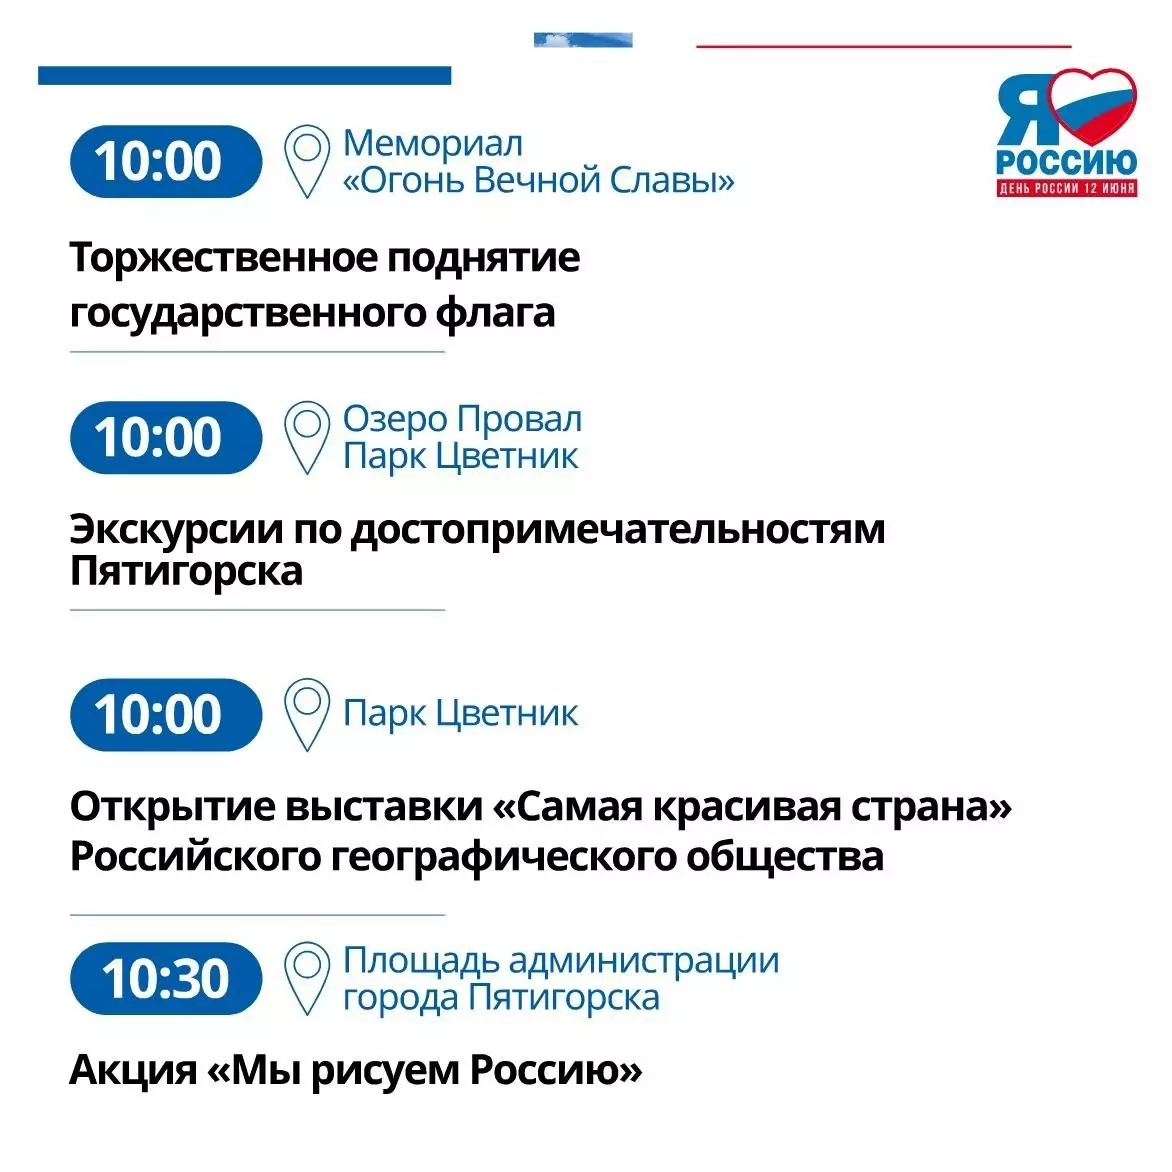 Программу мероприятий на День России составили в Пятигорске7